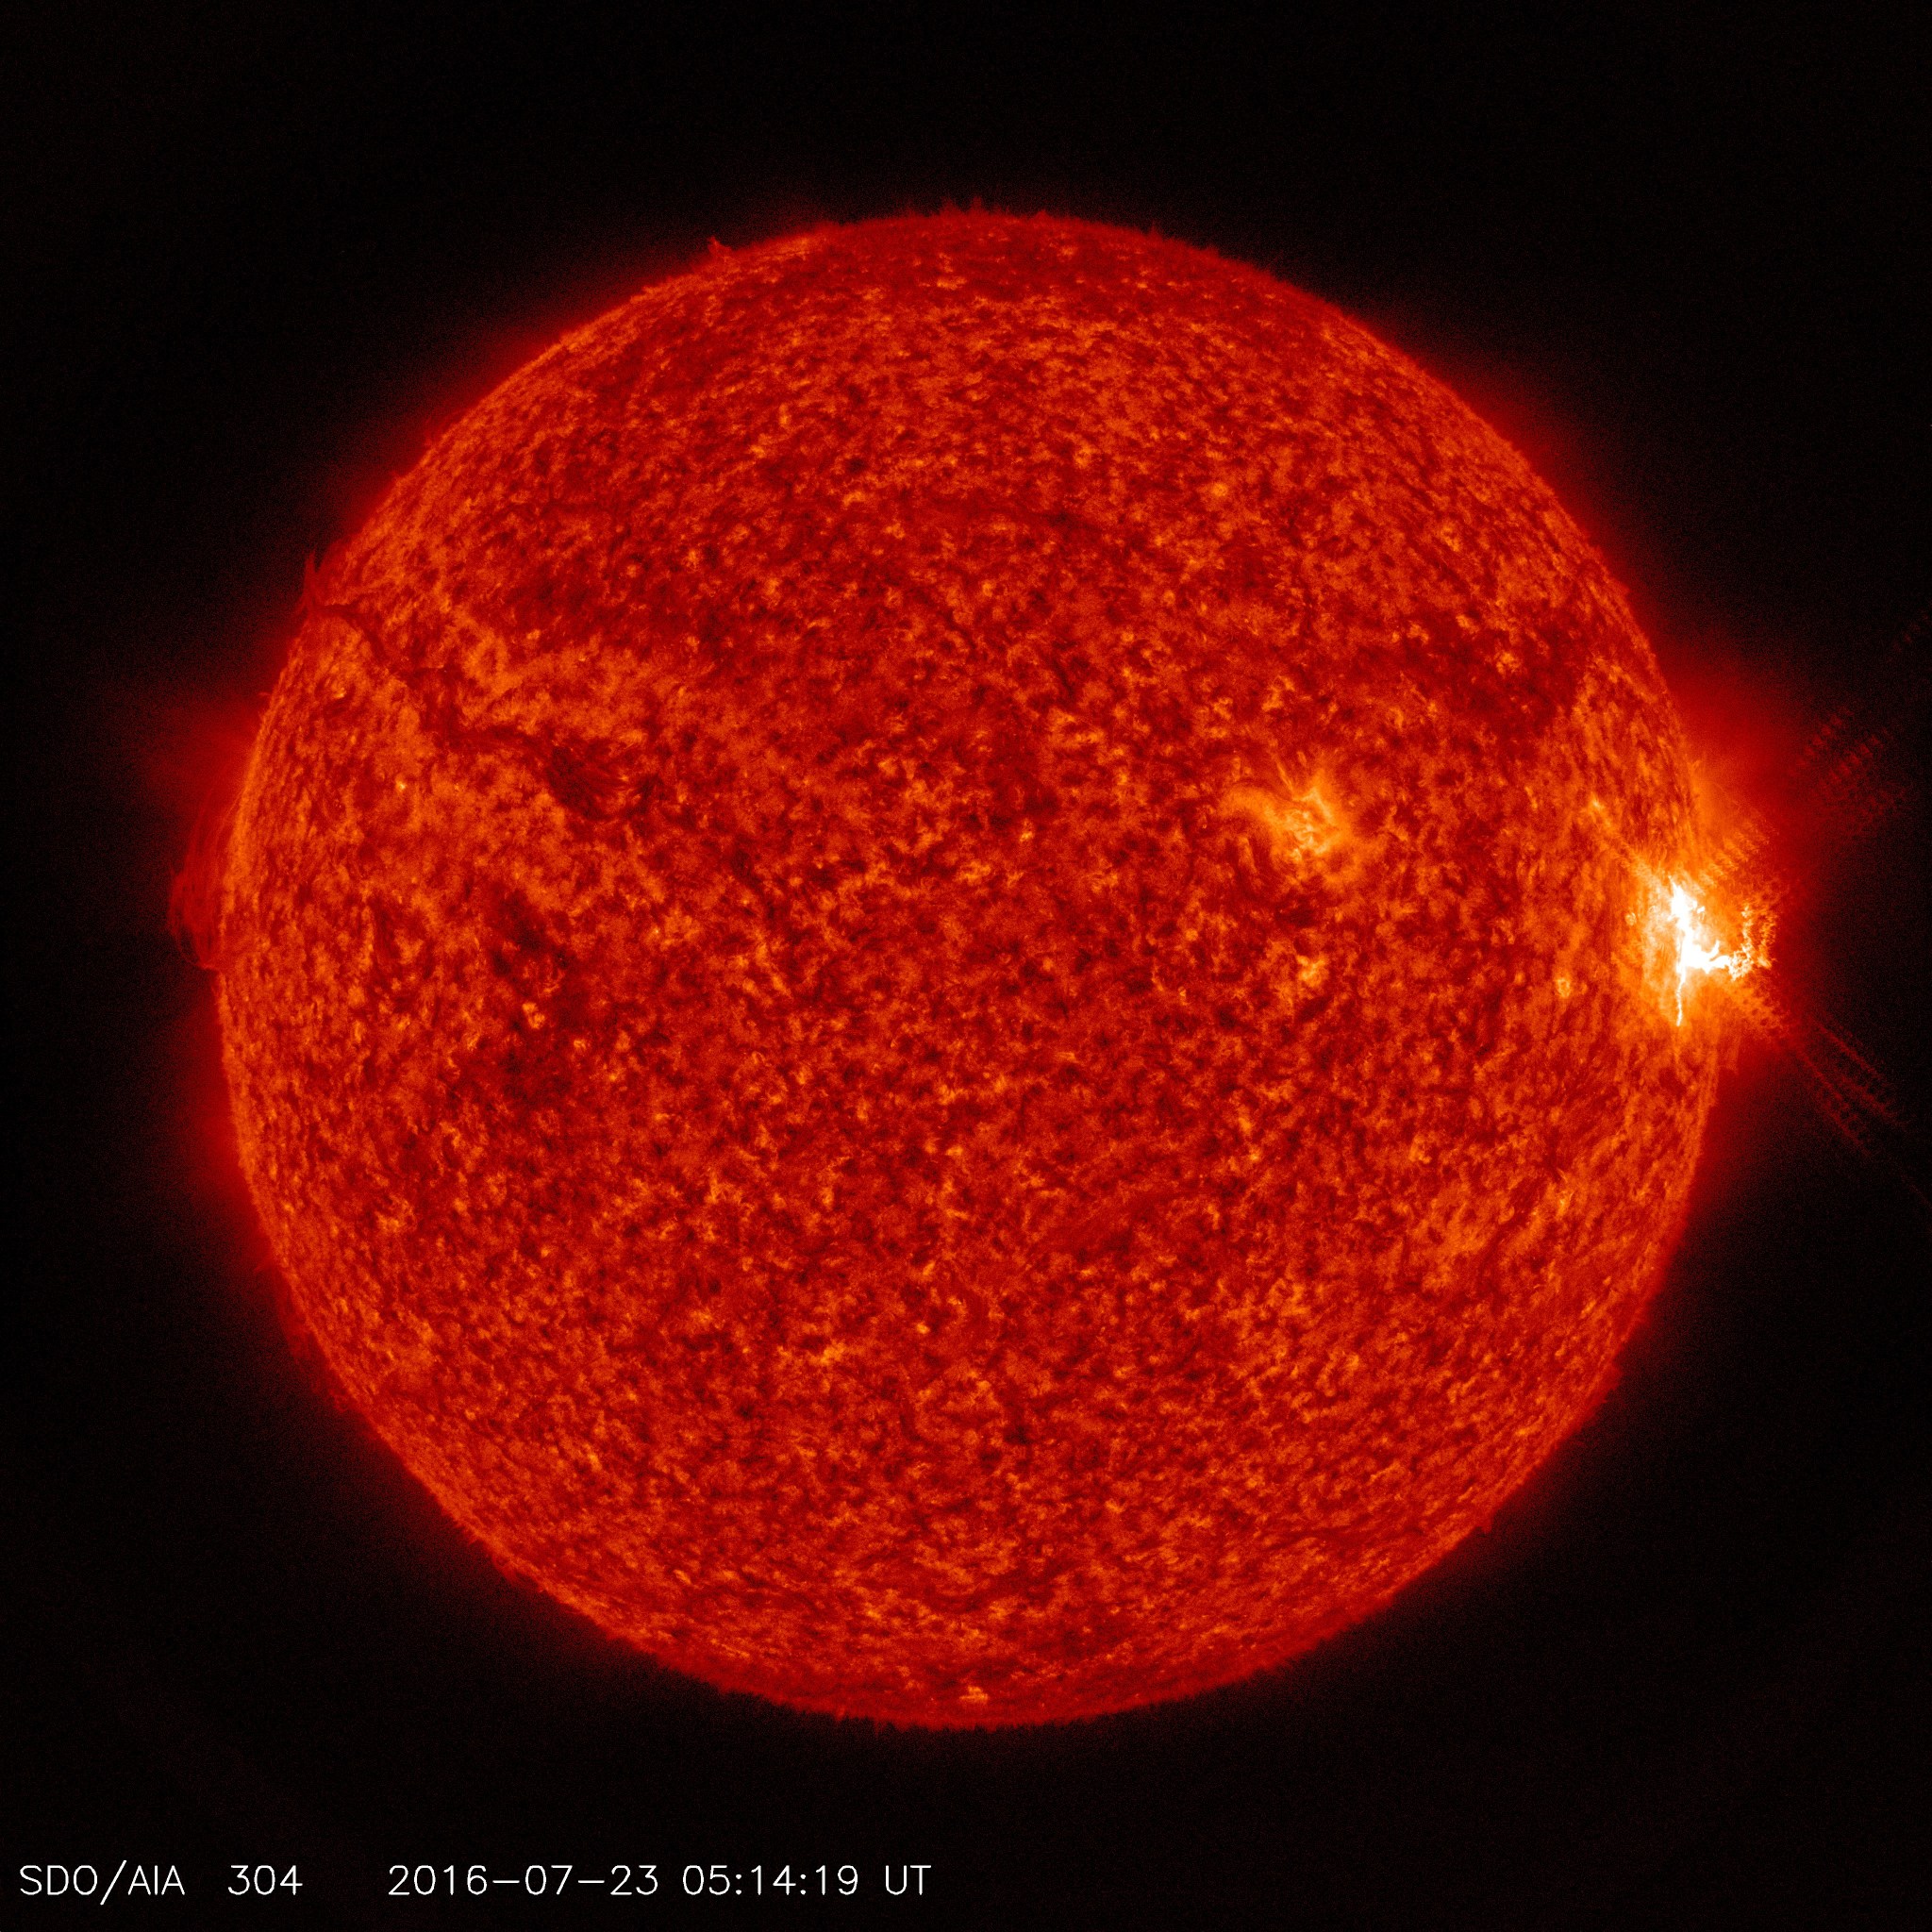 SDO sees an M7.6 solar flare